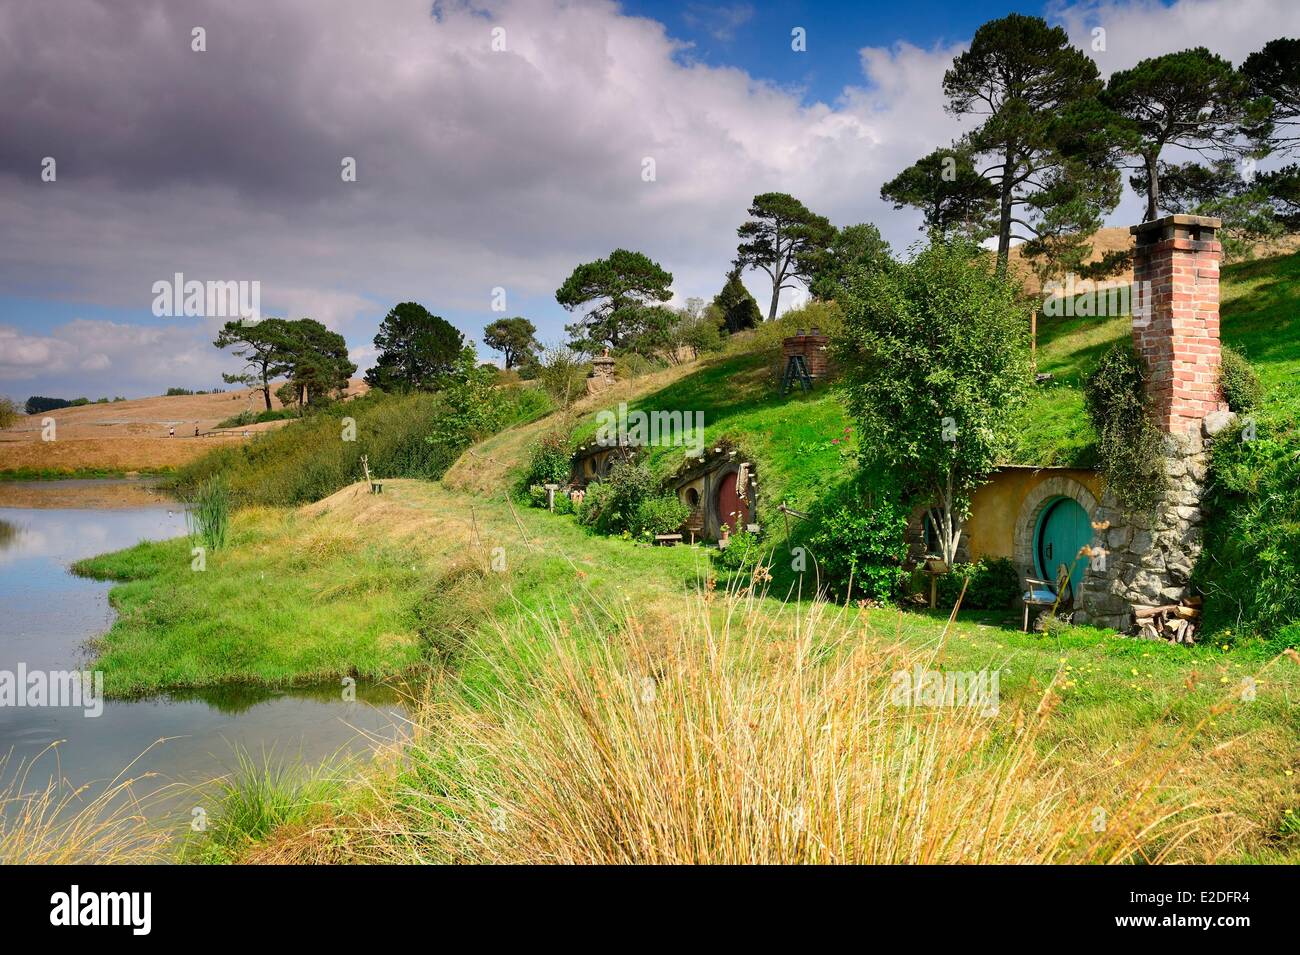 Nueva Zelanda Isla Norte Matamata Hobbiton el Hobbit pueblo construido para la película El Señor de los anillos por Peter Jackson Foto de stock